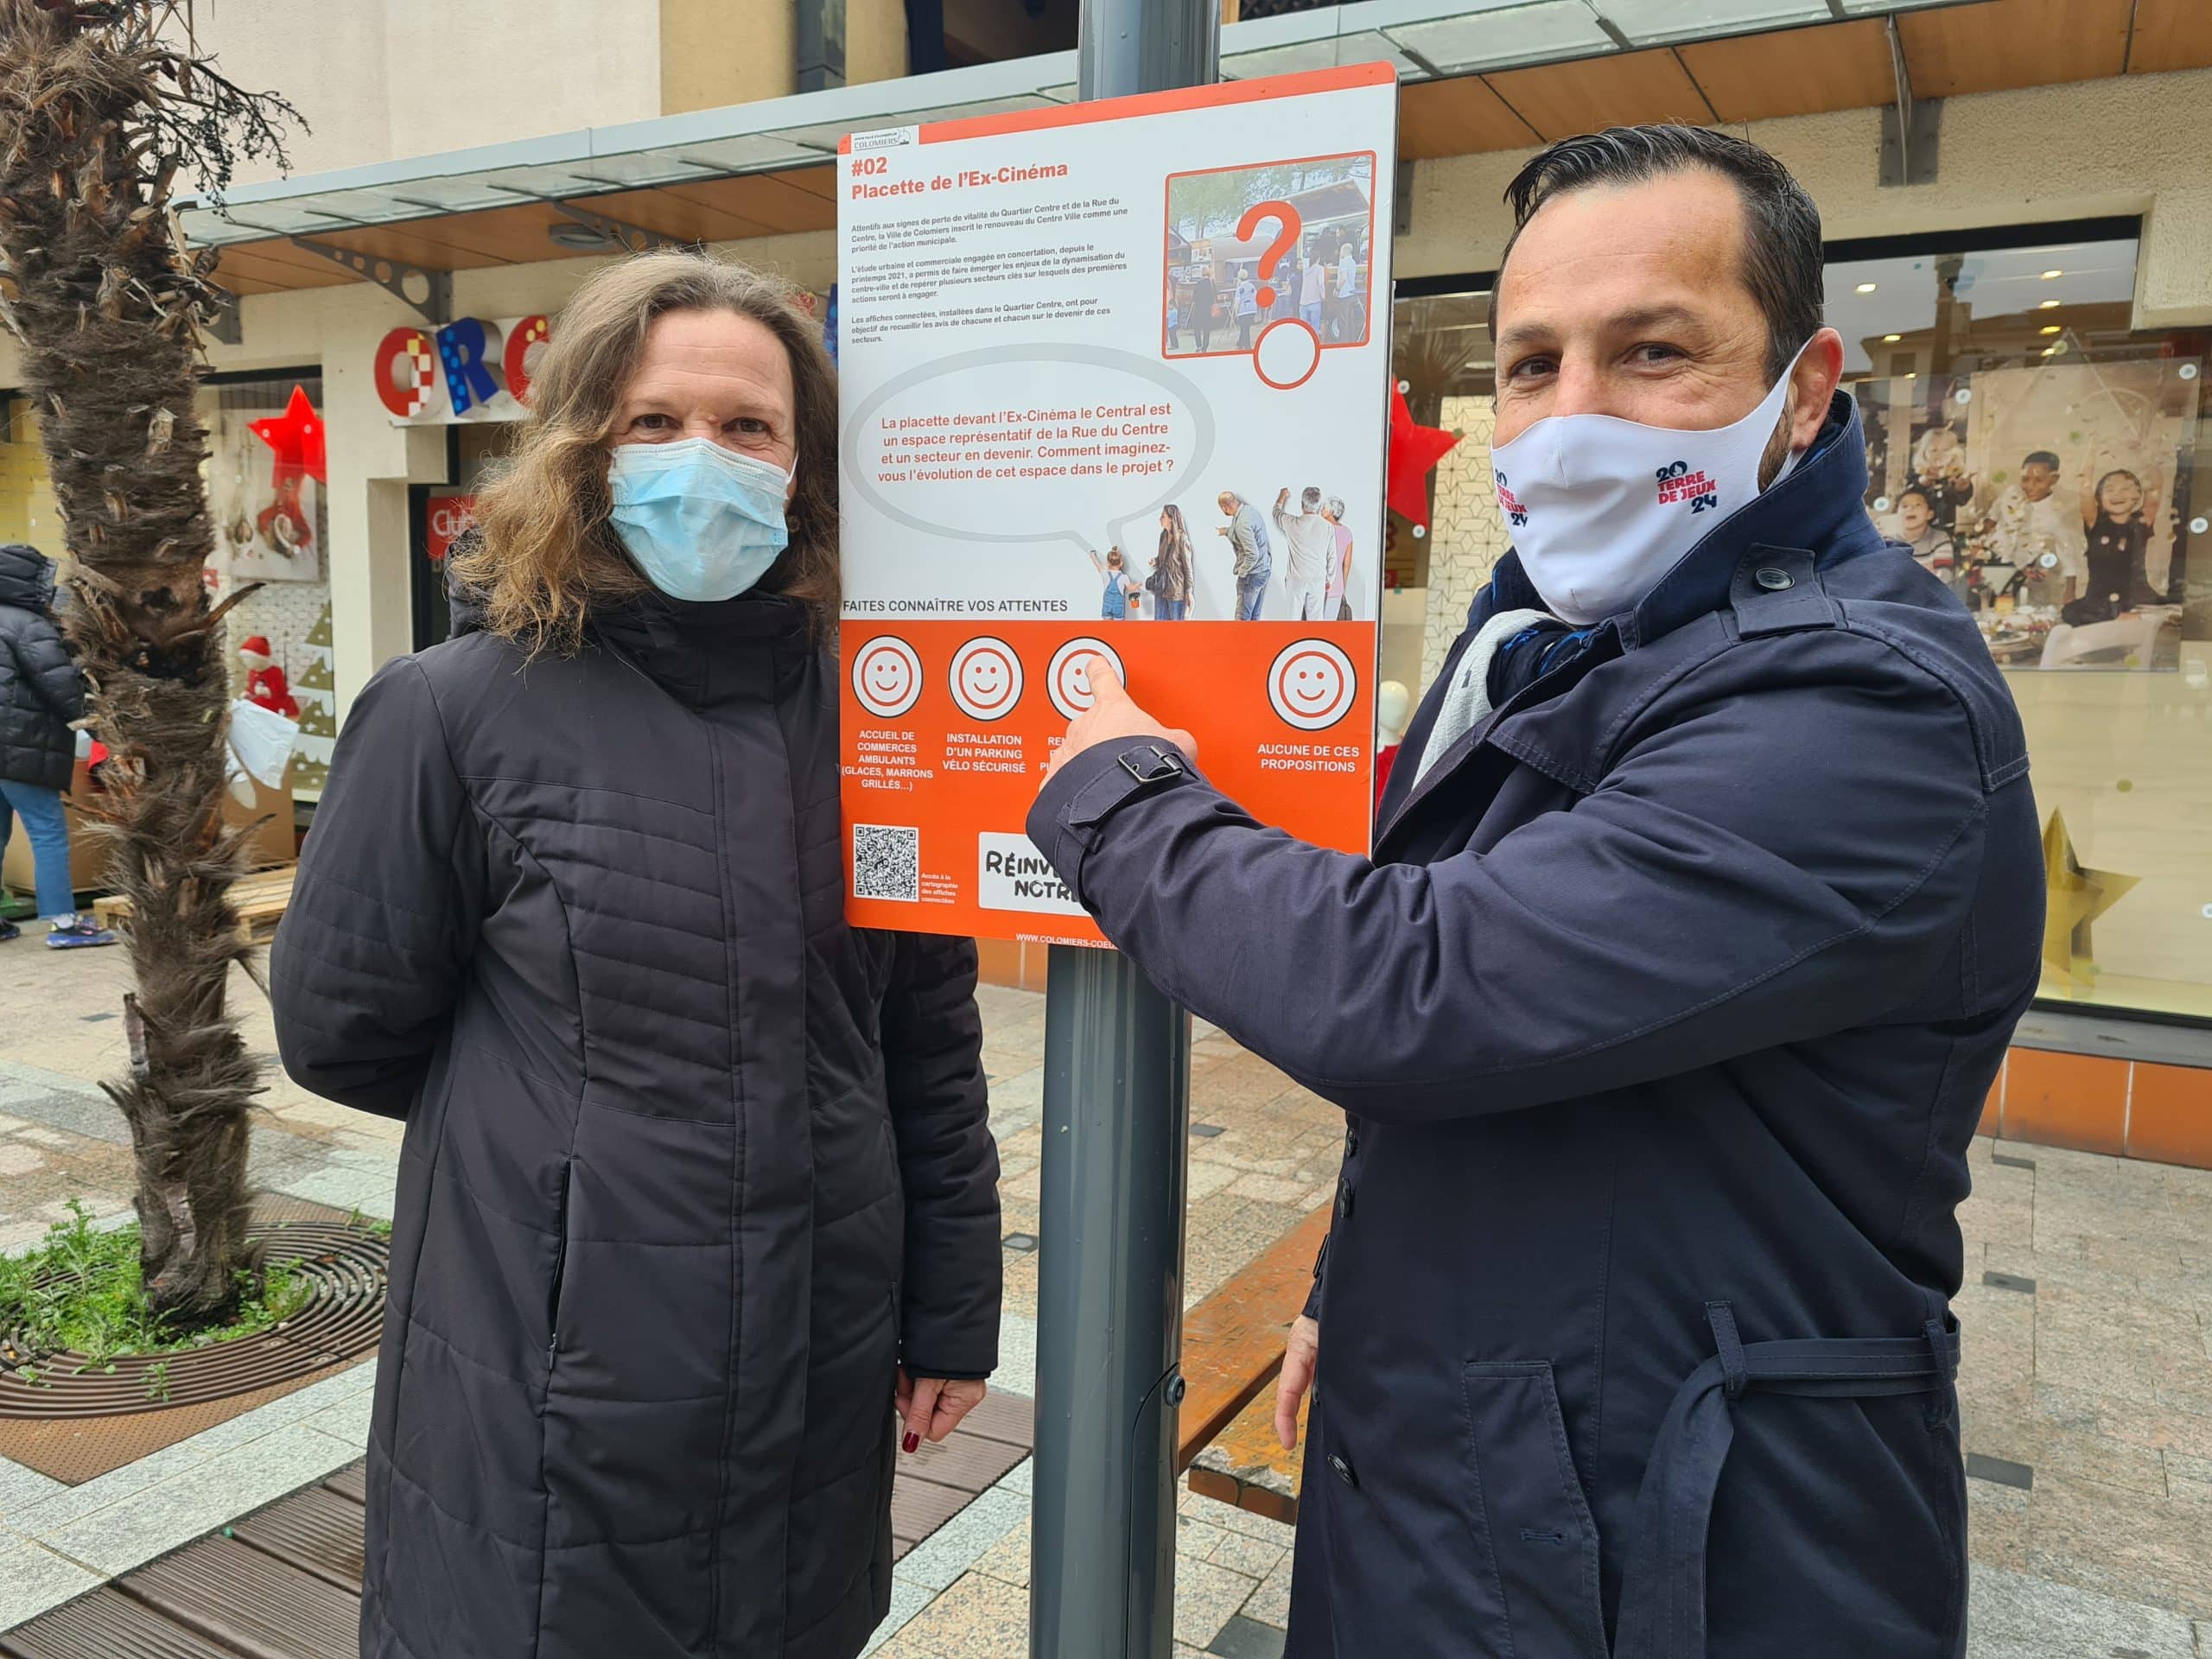 À Colomiers, près de Toulouse, 8 affiches connectées permettent de recueillir l'avis des habitants sur un projet de redynamisation urbaine @VilleDeColomiers